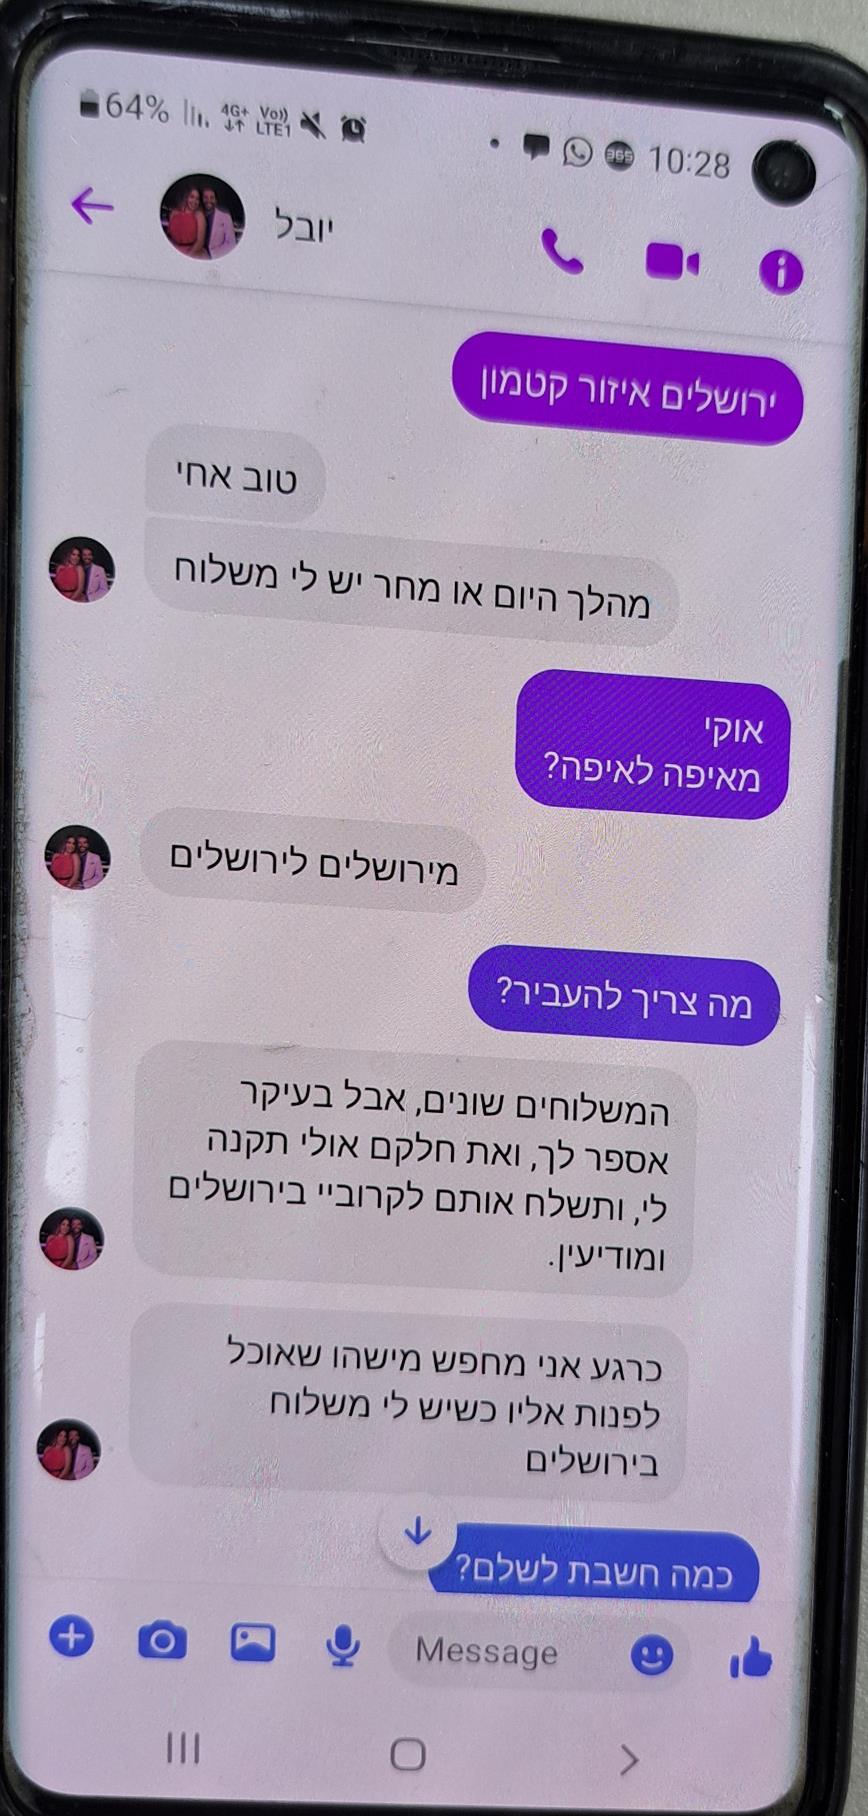 התכתבות של אחד החשבונות הפיקטיביים שהפעיל חמאס, עם אזרח ישראלי אותו ניסו לשדל להעביר חומרי נפץ בישראל (צילום: ללא קרדיט)